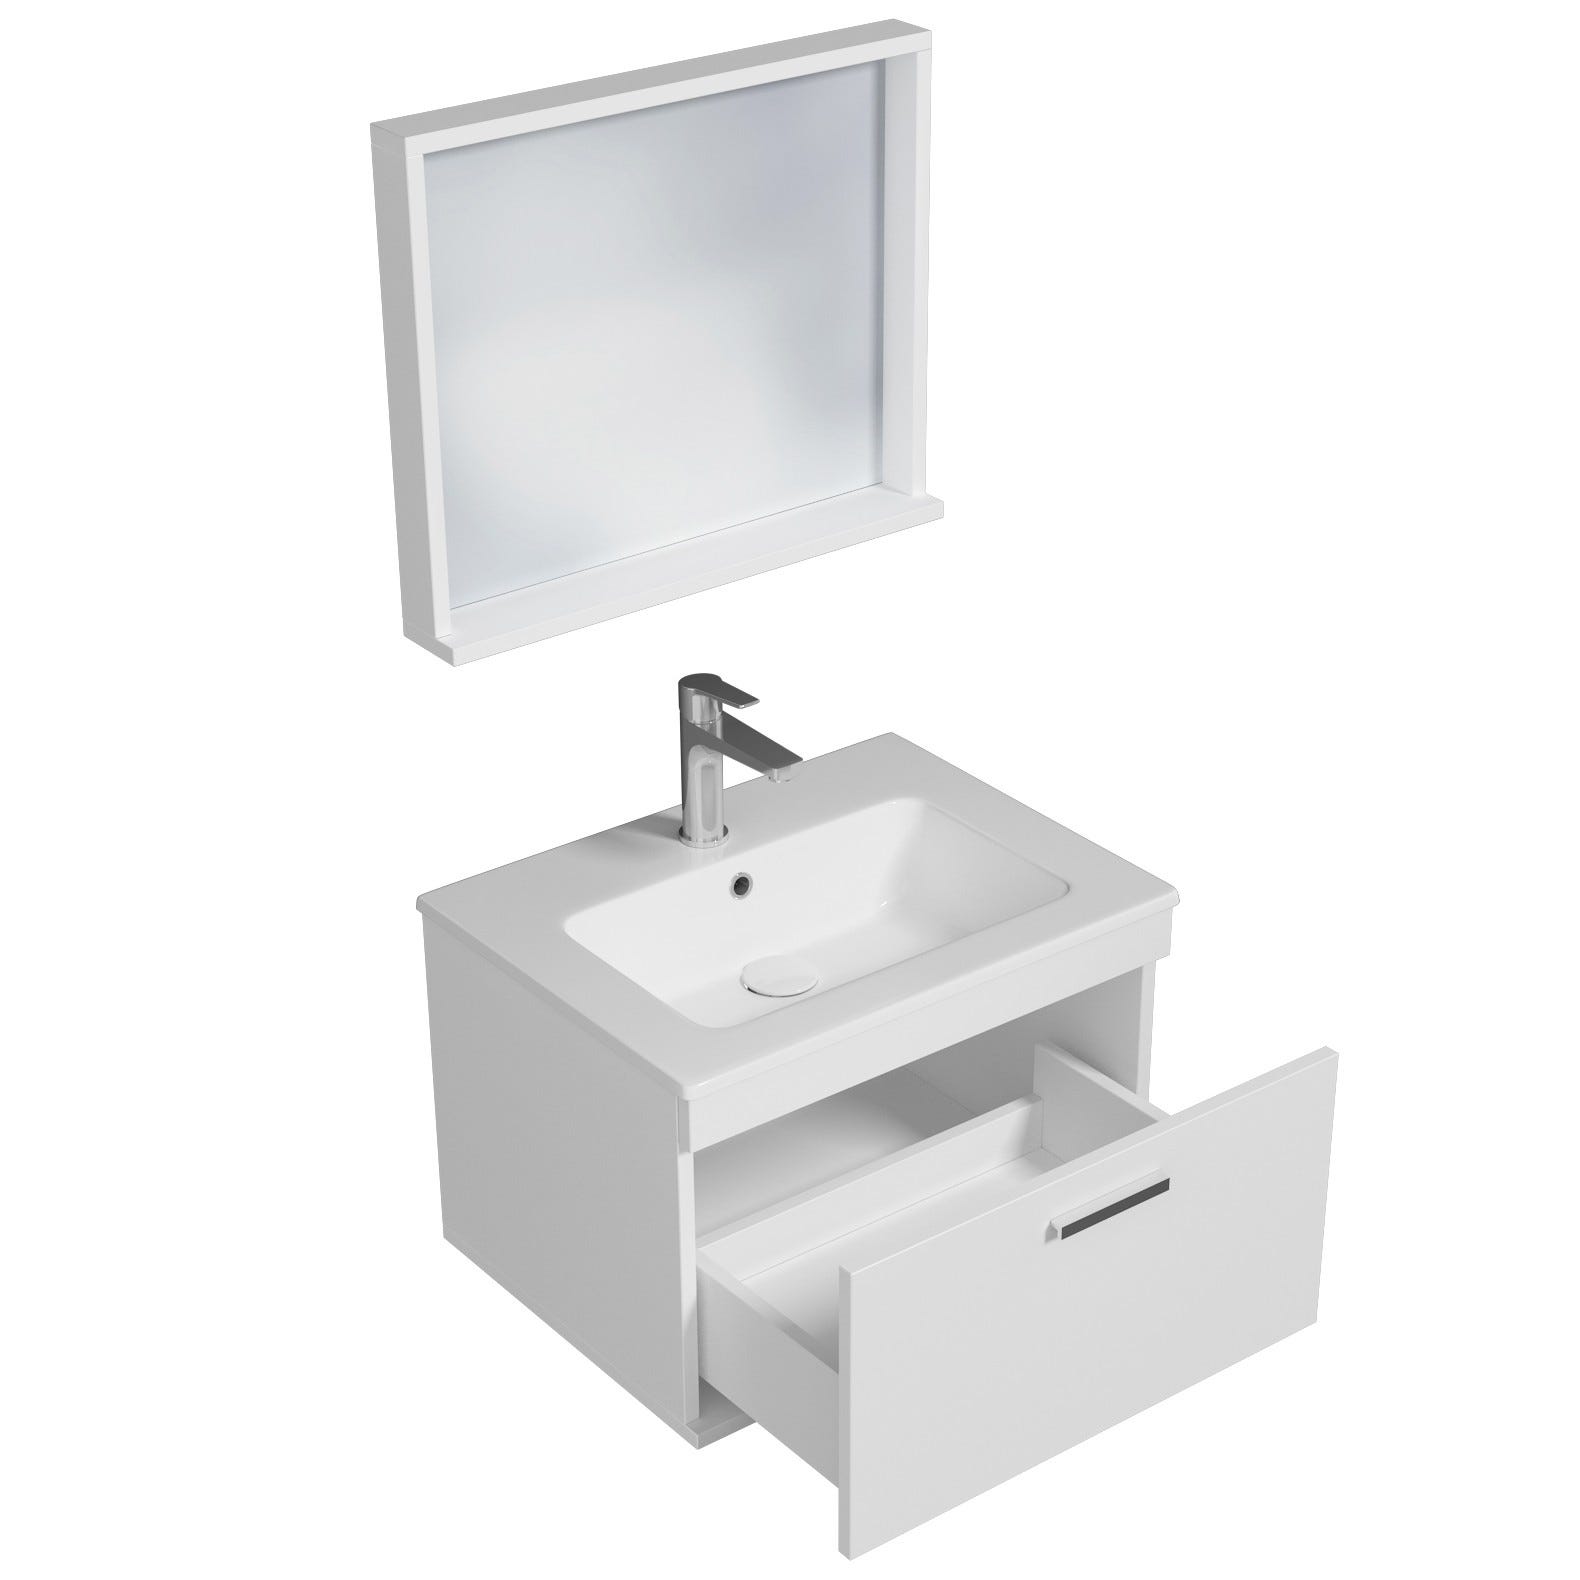 RUBITE Meuble salle de bain simple vasque 1 tiroir blanc largeur 60 cm + miroir cadre 1